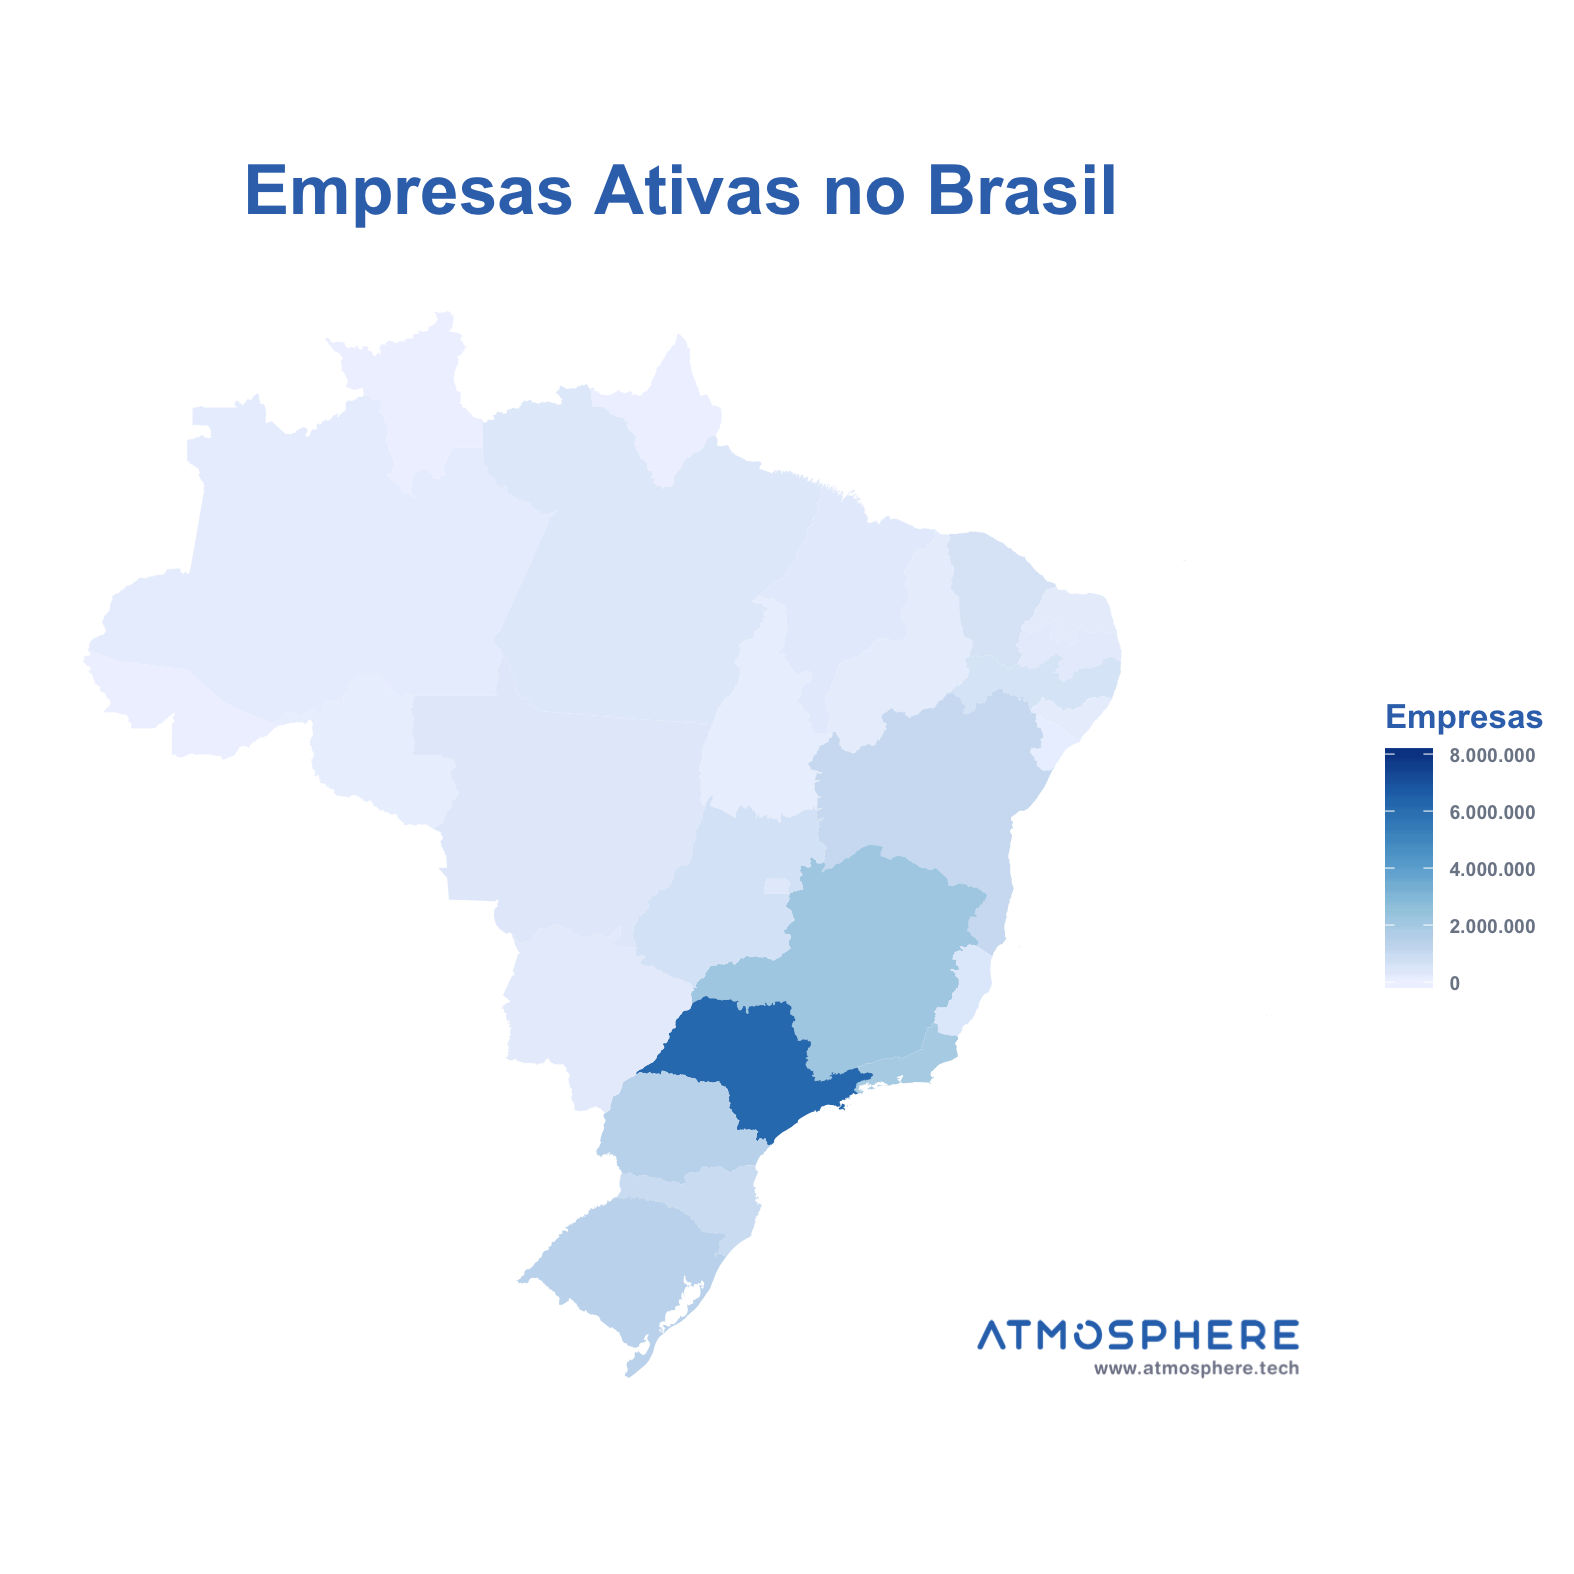 Atmosphere Empresas Ativas por Estado no Brasil